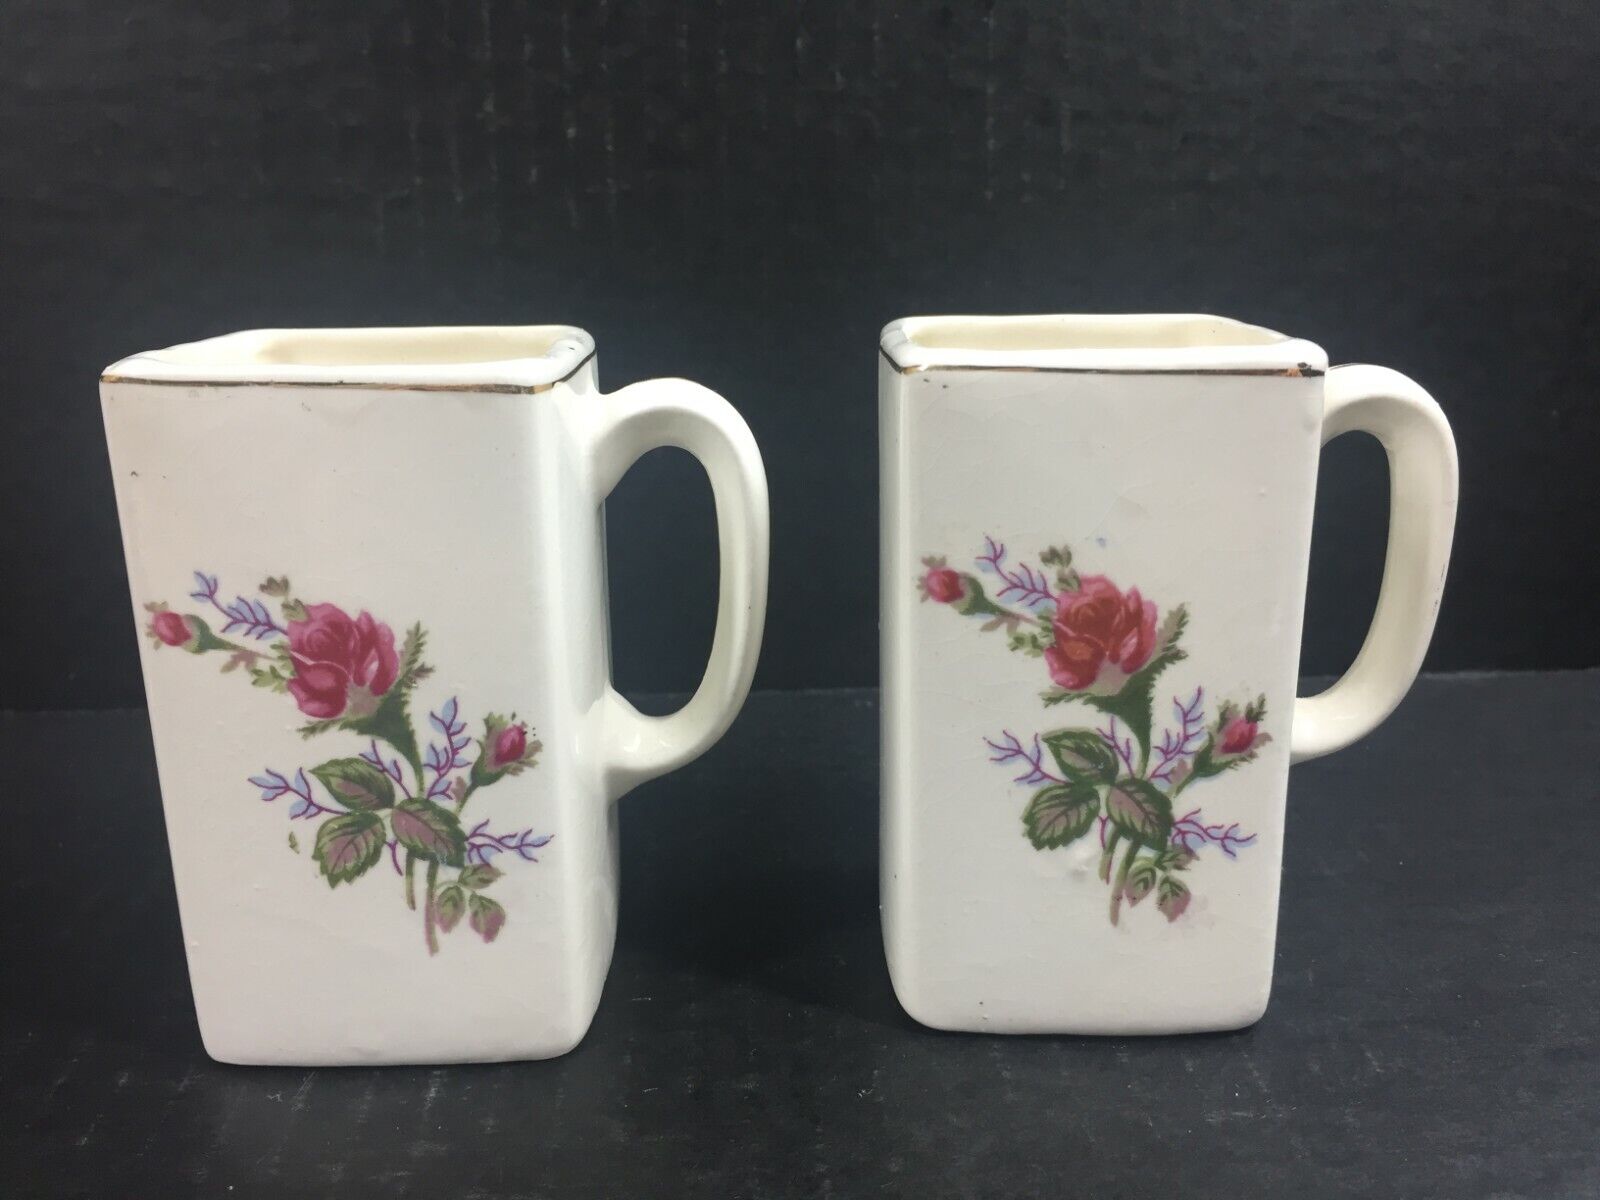 Vintage Japan Square Shaped Tea Espresso Cups Mug Lot Floral Gold Red Rose Pair